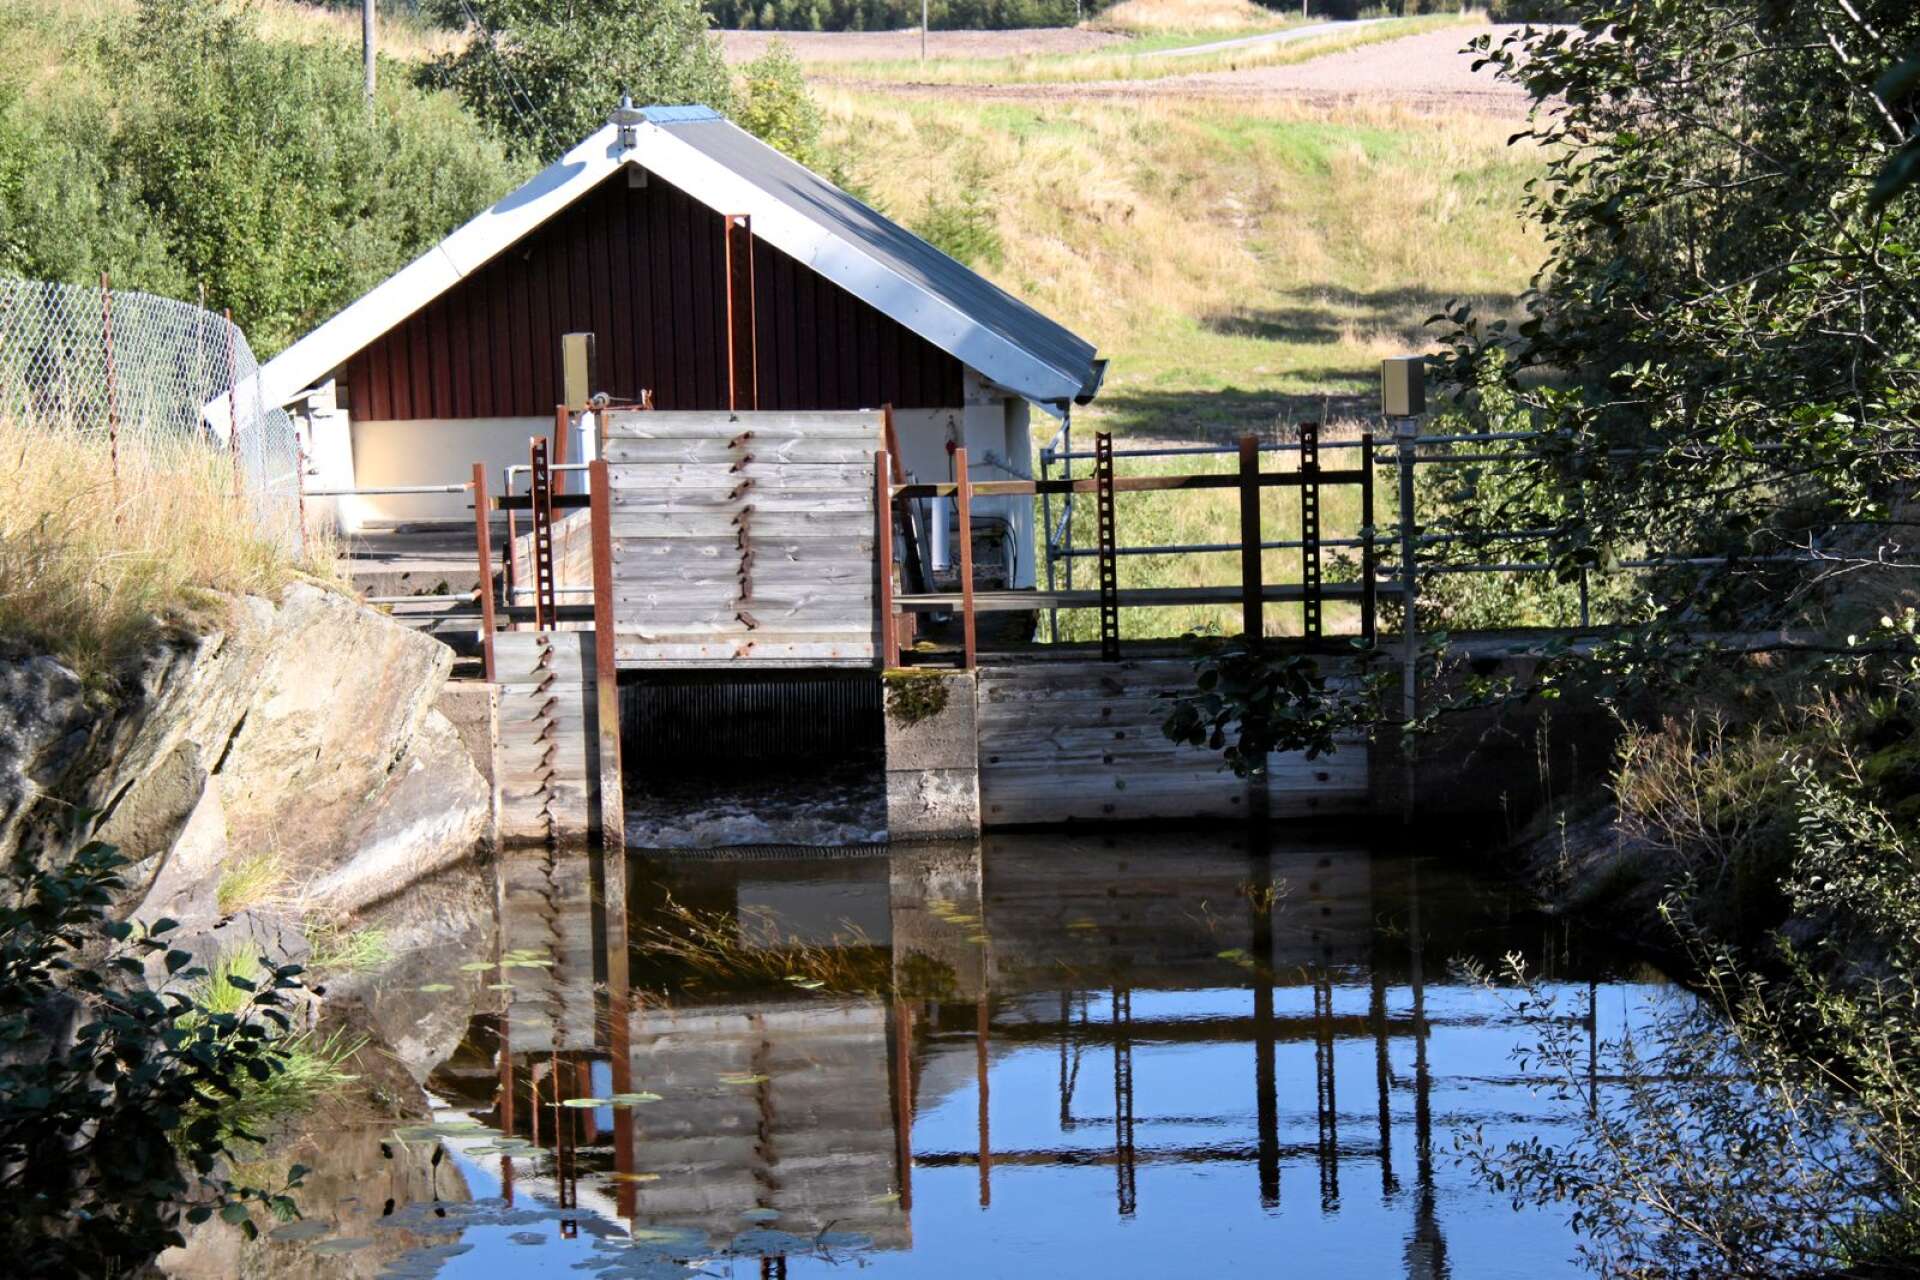 Med dammens skötsel påverkas hela det berörda vattendraget, ett ansvar som kräver kunskap om väderlekarnas och årstidernas krav, skriver Kjell-Arne Ottosson. (Bild på vattenkraftverk väster om Färgelanda/Högsäter.)